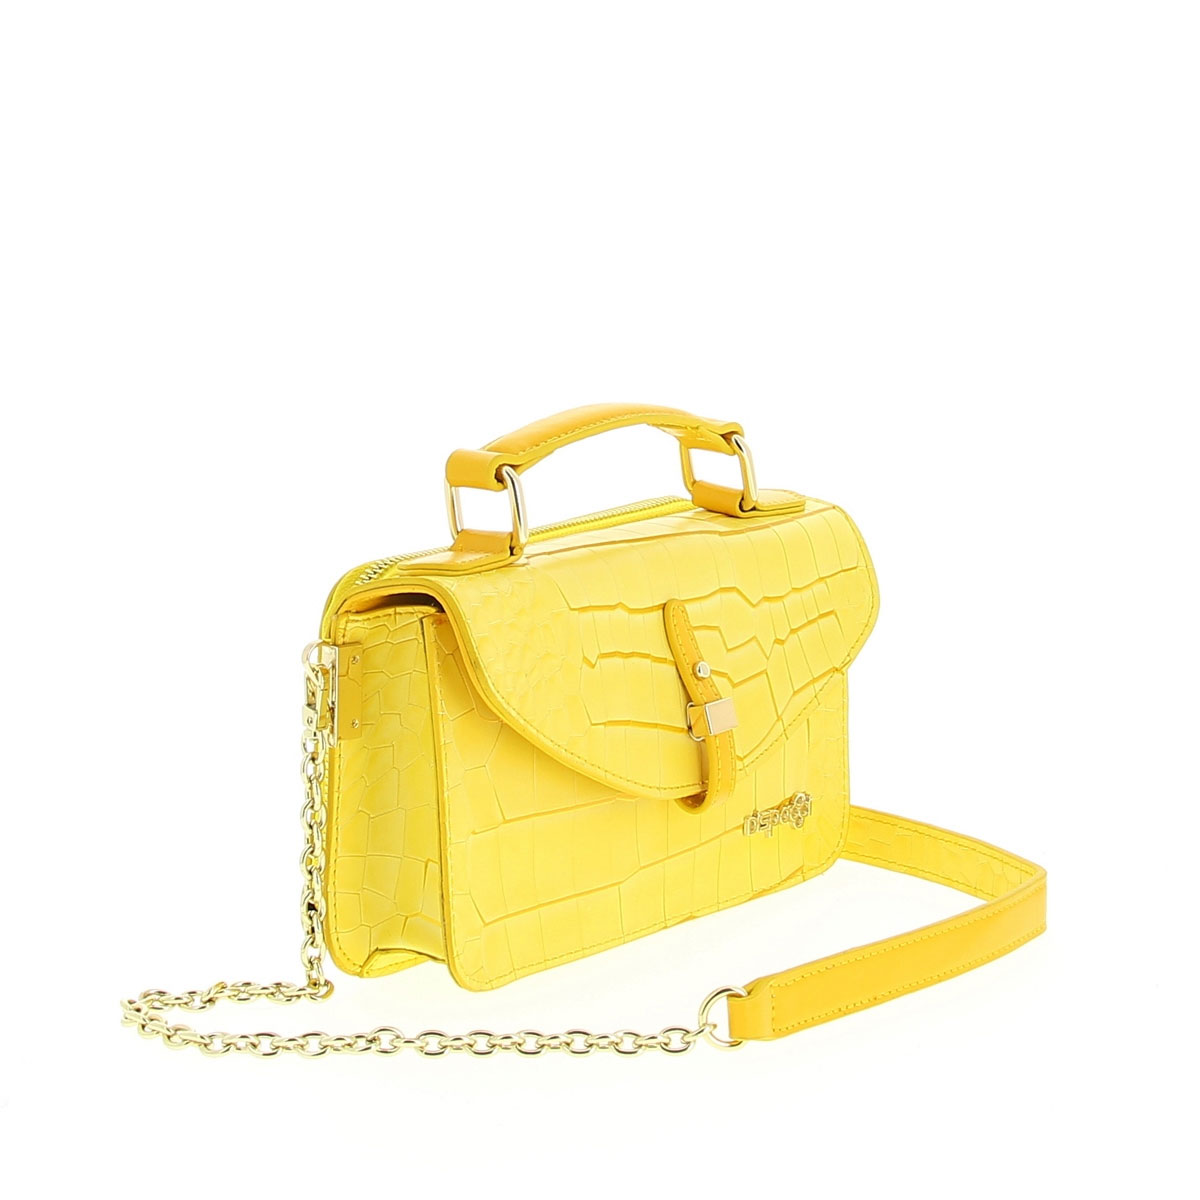 Сумка женская "Dispacci", цвет: желтый. Т3191-1 - купить фирменную сумку по доступной цене с доставкой на дом в интернет магазине OZON.ru